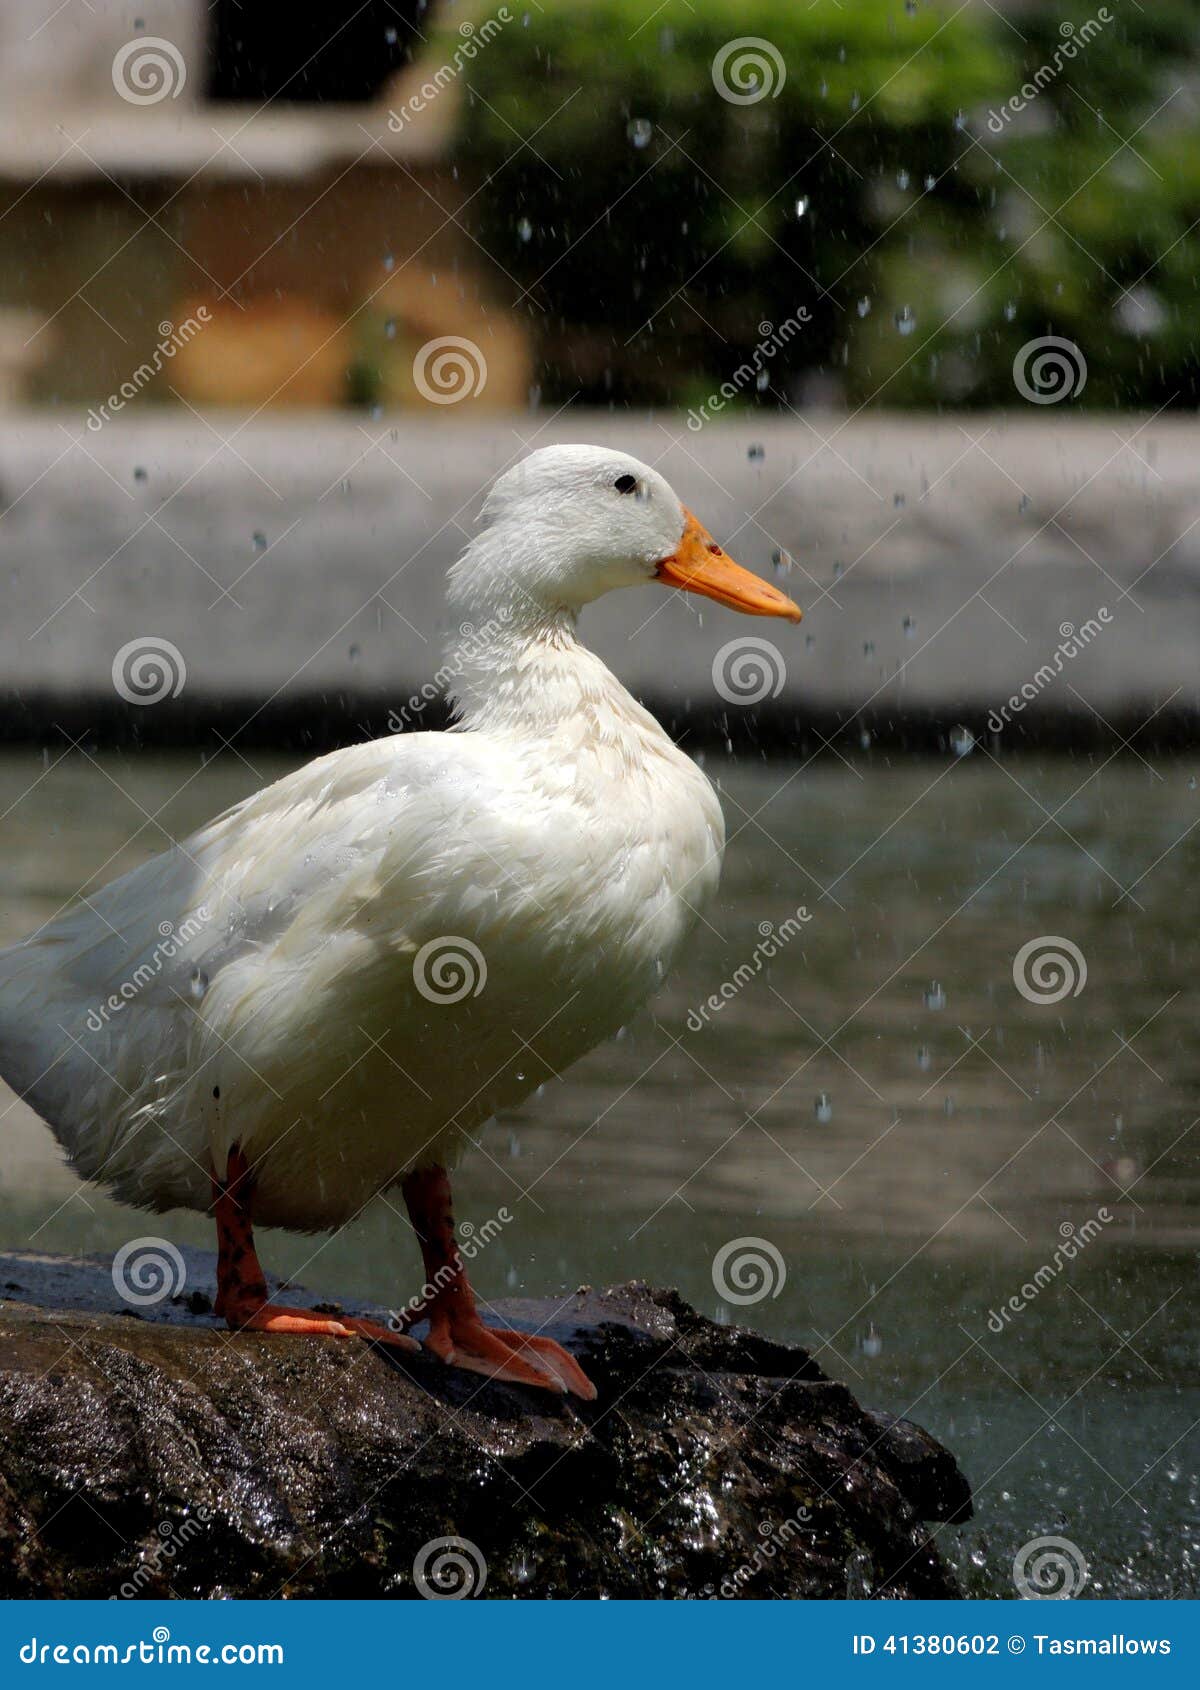 sunbathing duck